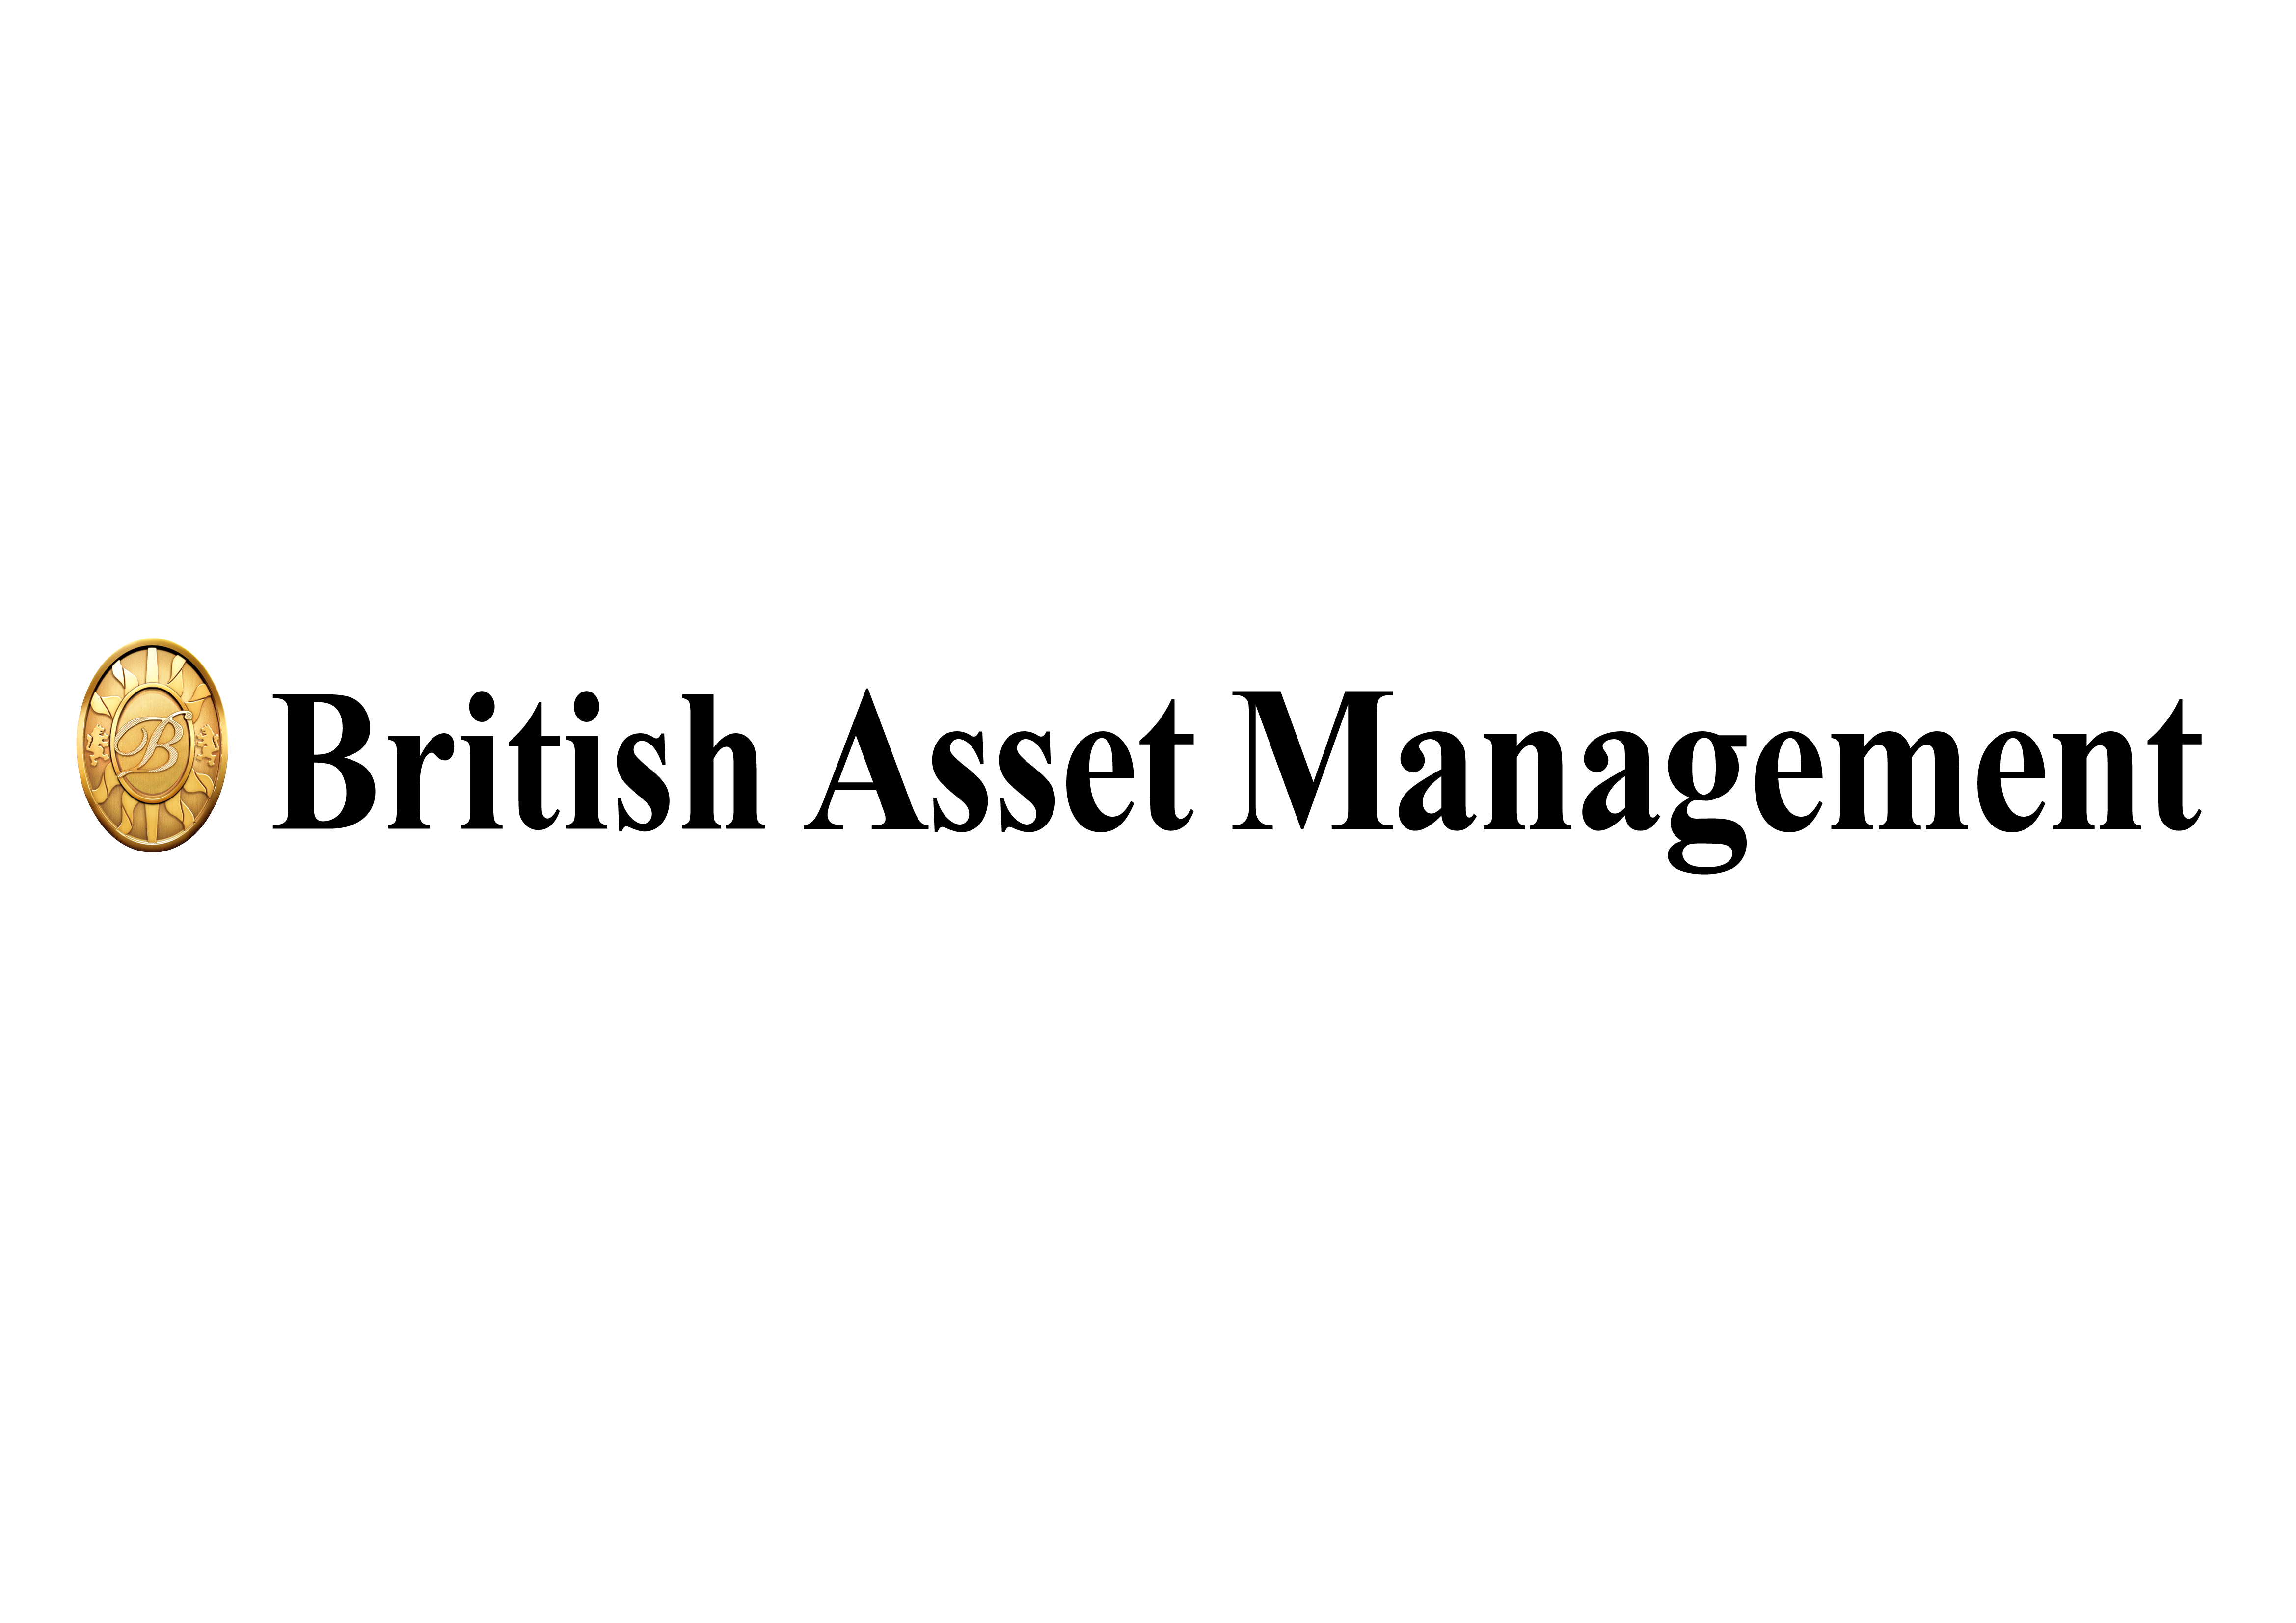 브리티시자산관리의 계열사 (주)브리티시자산관리의 로고